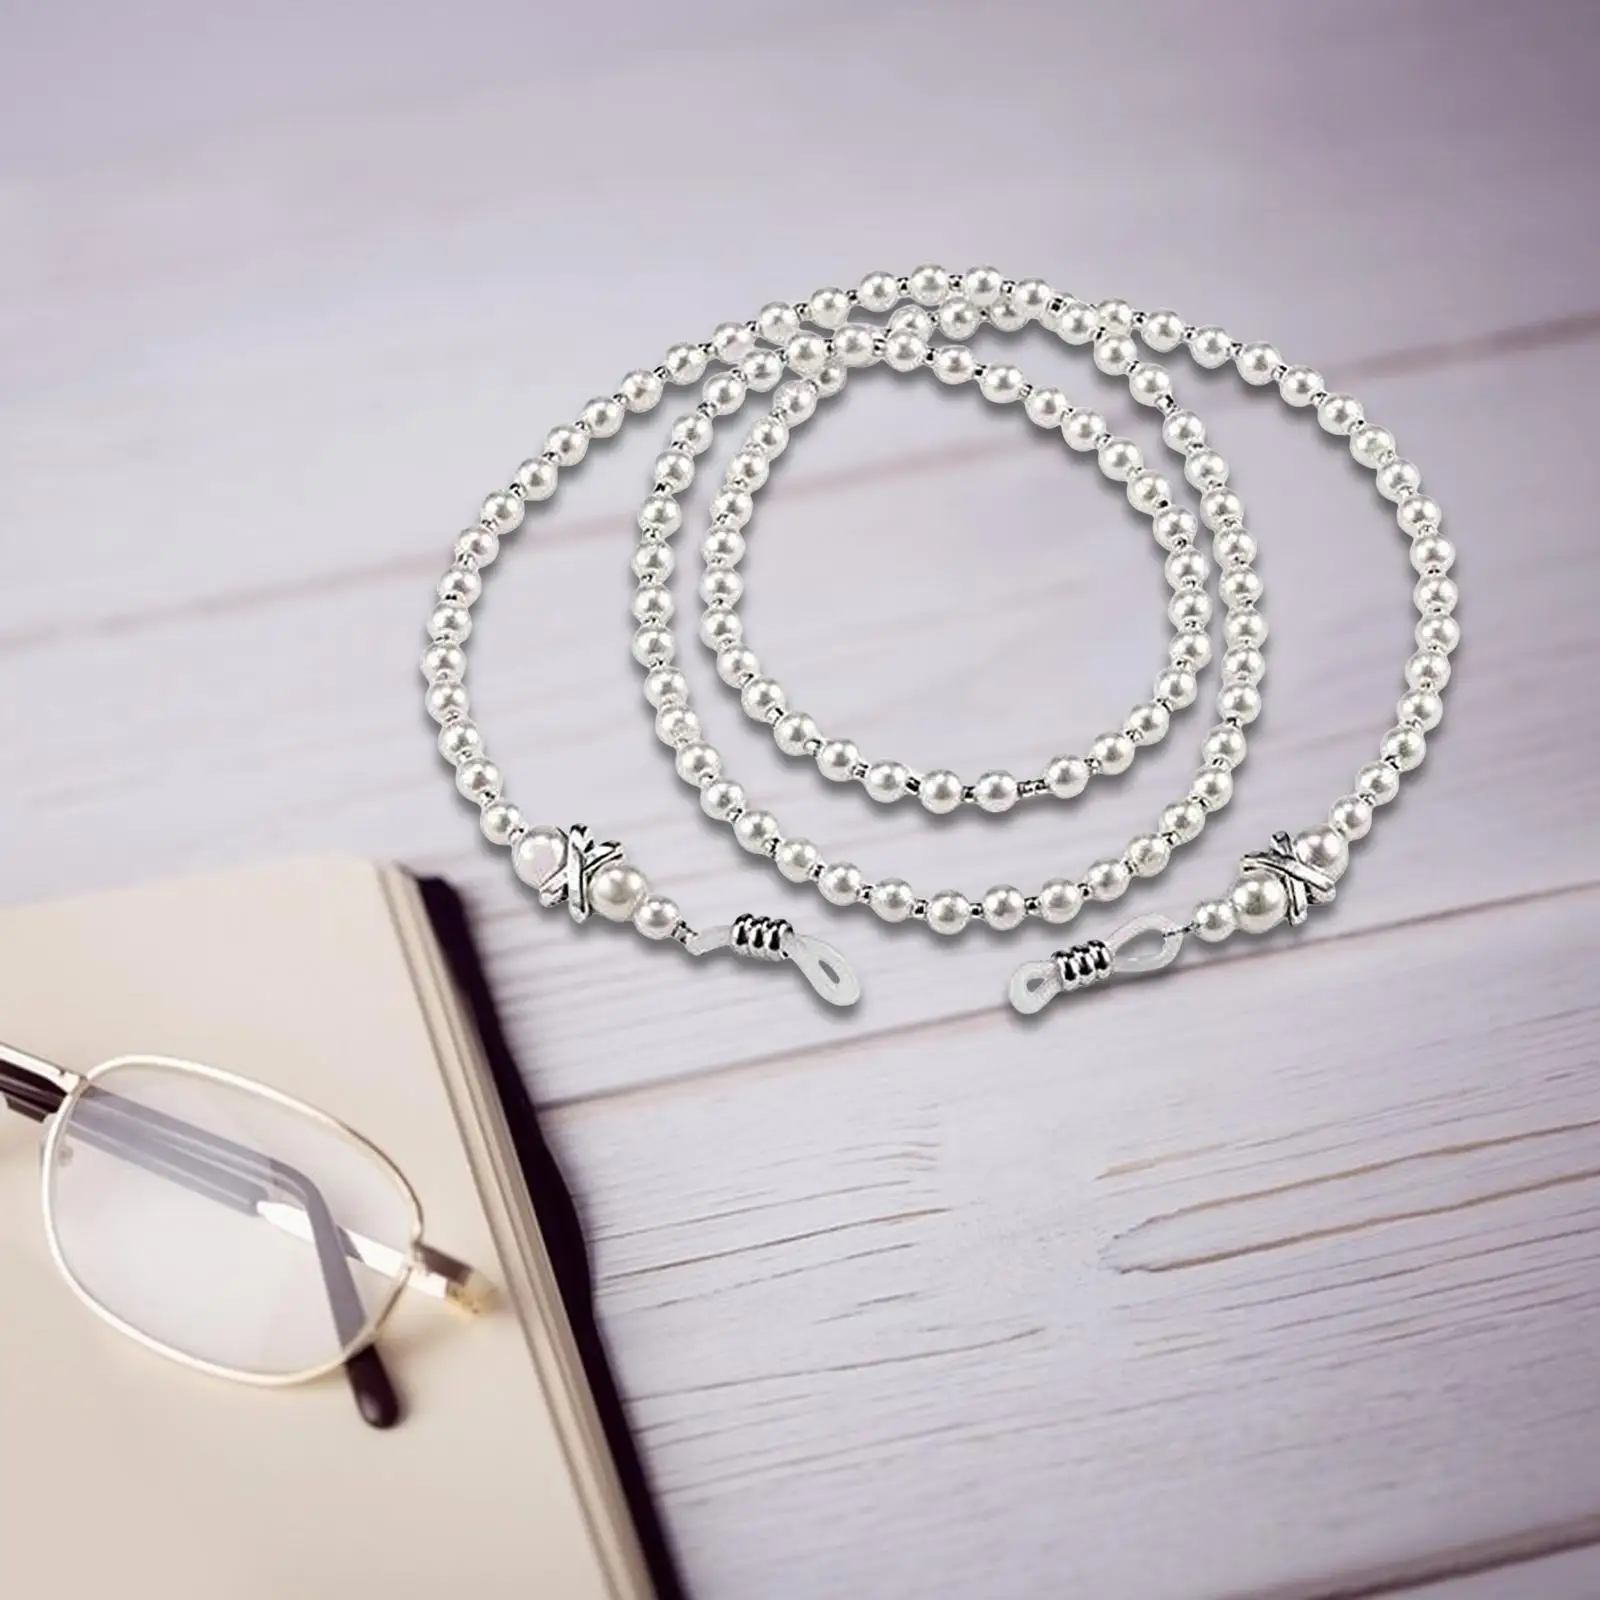 Beaded Eyeglass Chain Glasses Chain Necklace for Girls Eyewear Holder Glasses Holder Strap for Travel Anniversary Summer Beach